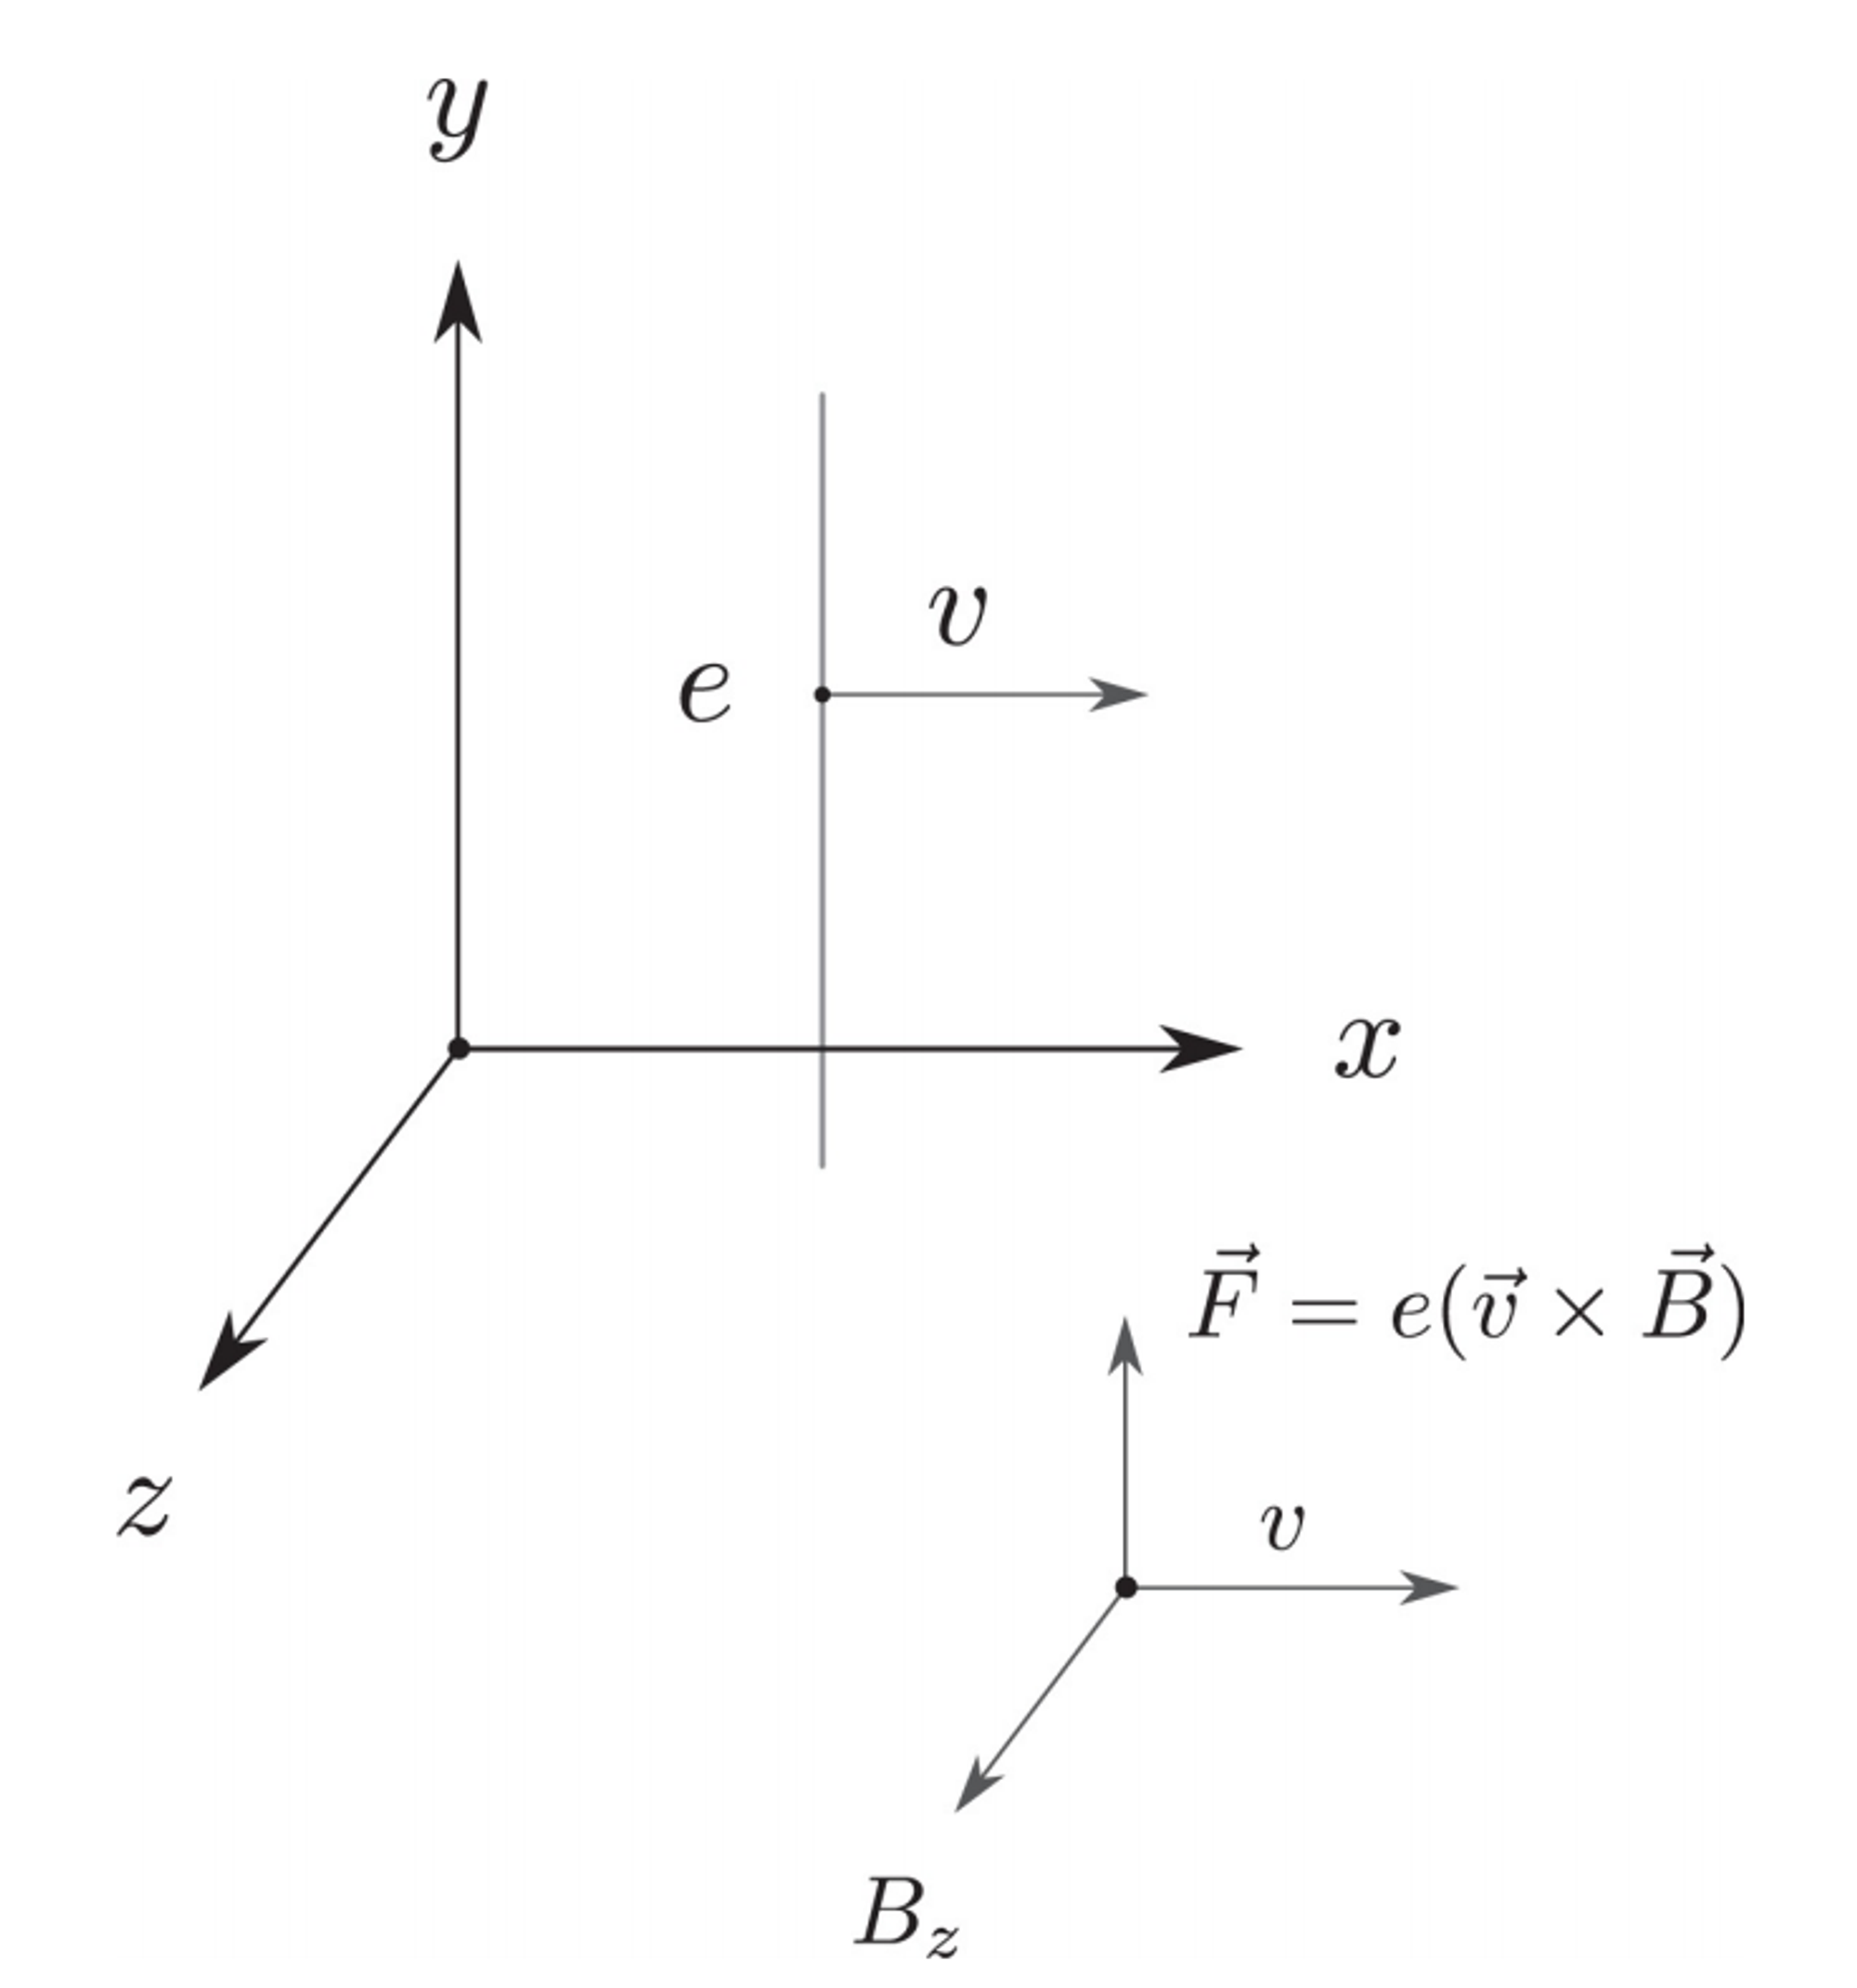 물리의 정석 : 특수 상대성 이론과 고전 장론 편 - 6.로런츠 힘의 법칙, 7.근본 원리와 게이지 불변, 8.맥스웰 방정식